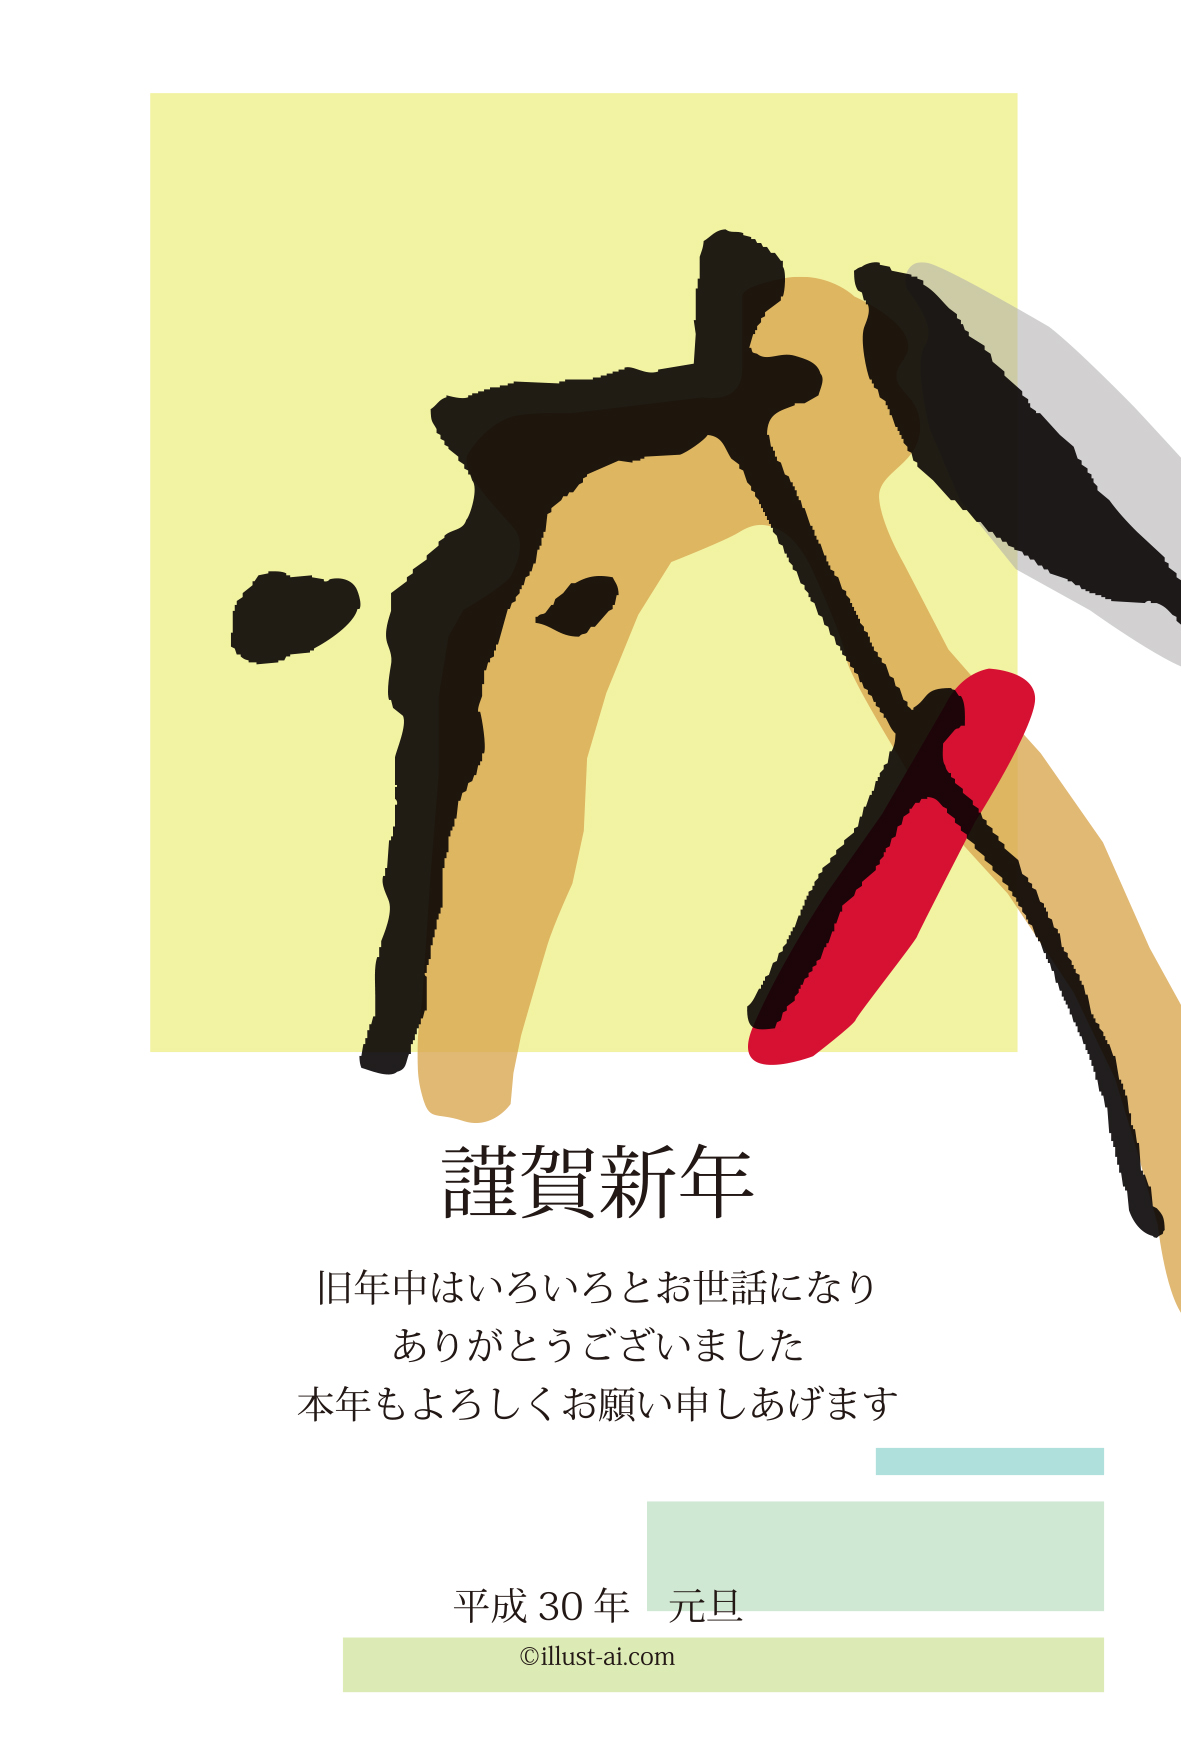 年賀状 戌年 割り箸ペンで描いた犬の横顔の戌の字 年賀状18無料イラスト素材集